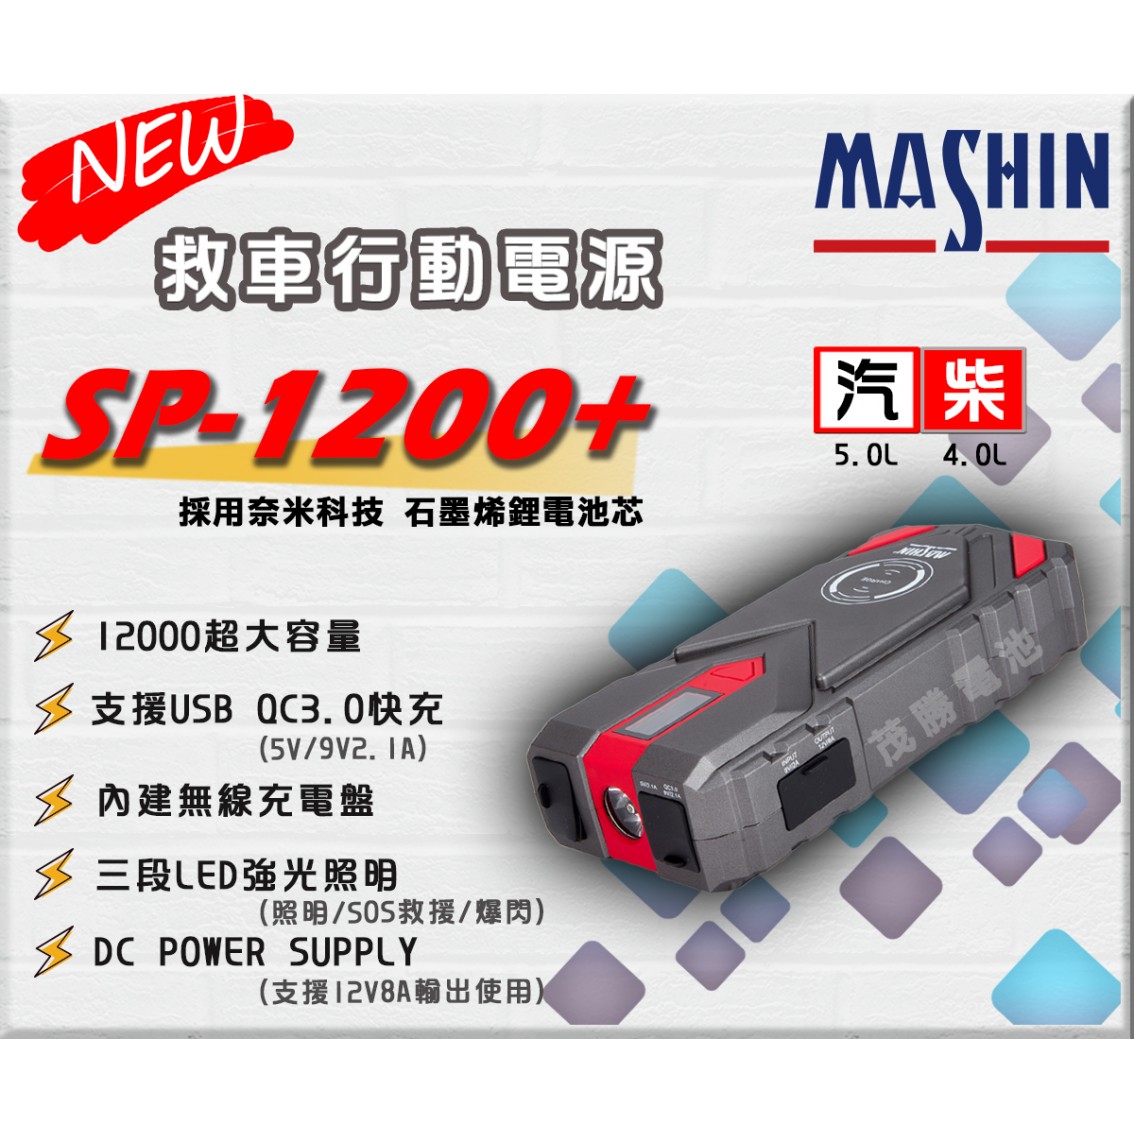 SP-1200+